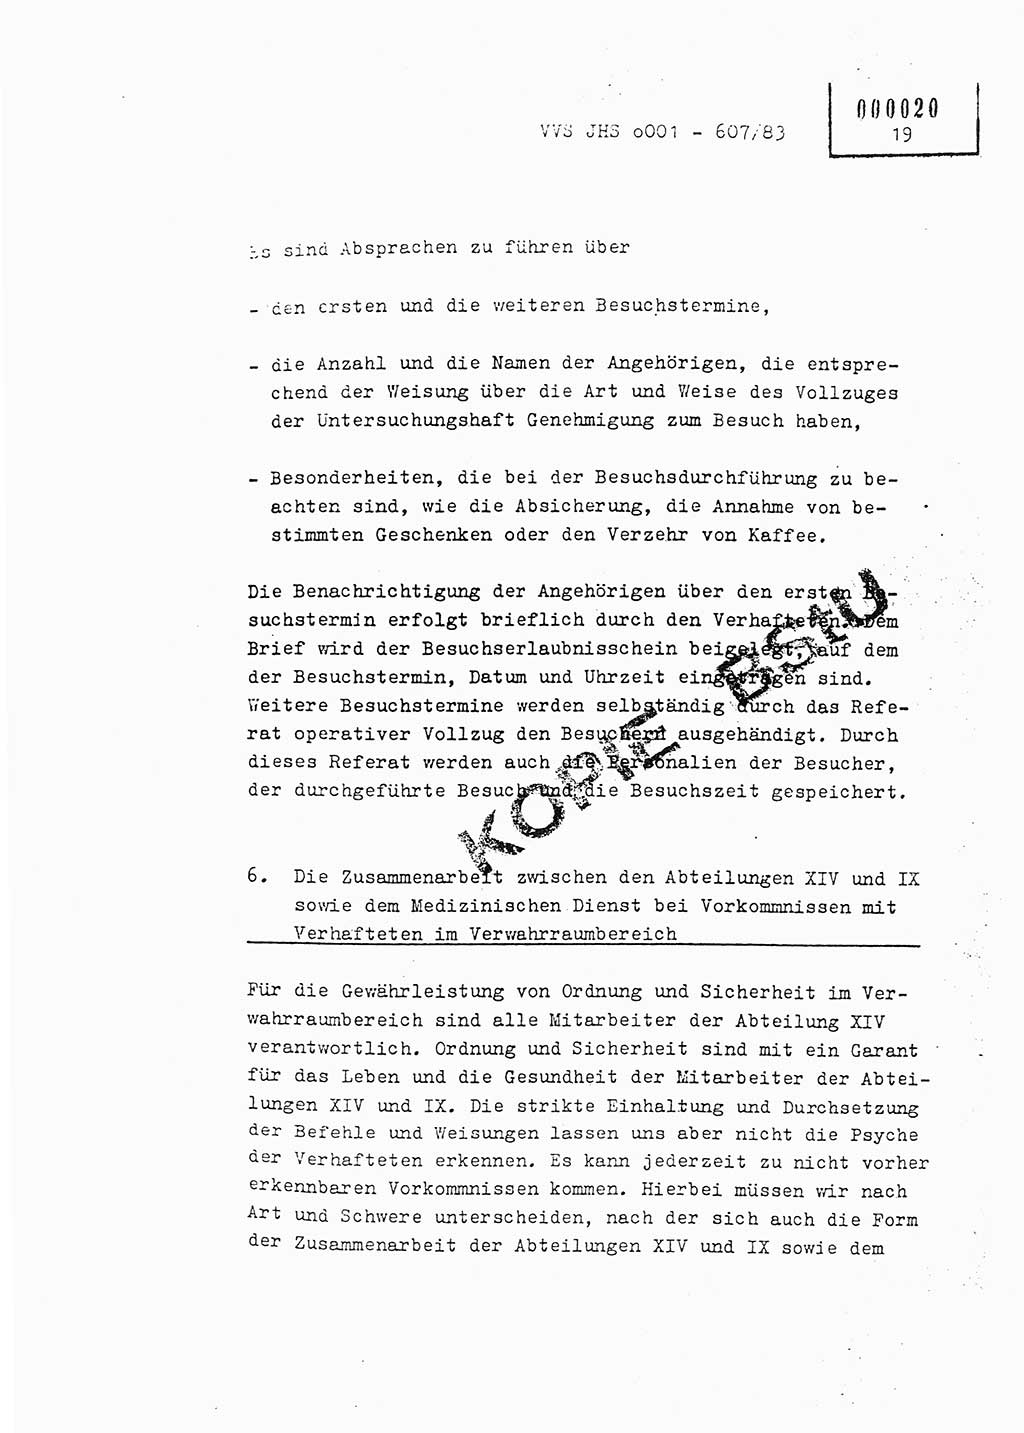 Fachschulabschlußarbeit Oberleutnant Hans-Joachim Saltmann (BV Rostock Abt. ⅩⅣ), Ministerium für Staatssicherheit (MfS) [Deutsche Demokratische Republik (DDR)], Juristische Hochschule (JHS), Vertrauliche Verschlußsache (VVS) o001-607/83, Potsdam 1983, Seite 19 (FS-Abschl.-Arb. MfS DDR JHS VVS o001-607/83 1983, S. 19)